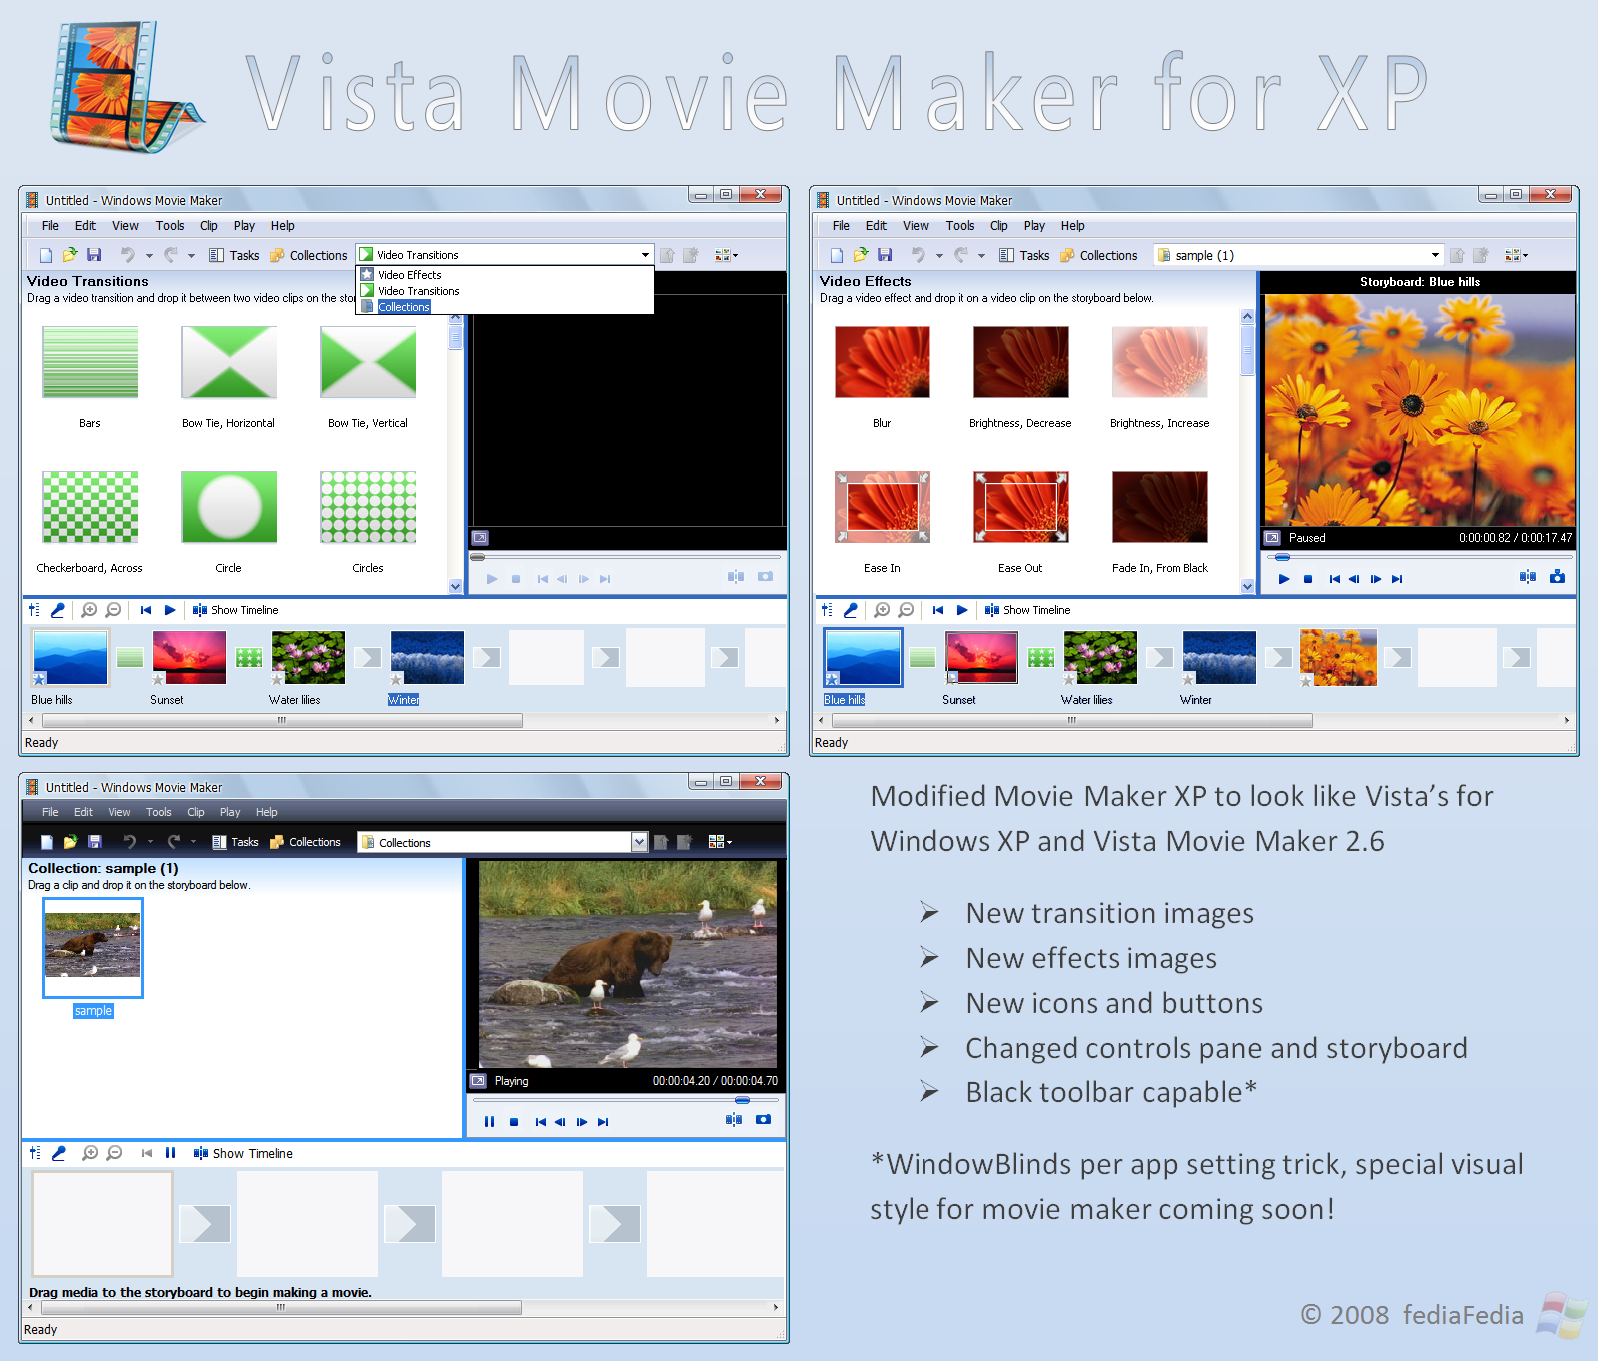 Vista's movieMaker for XP